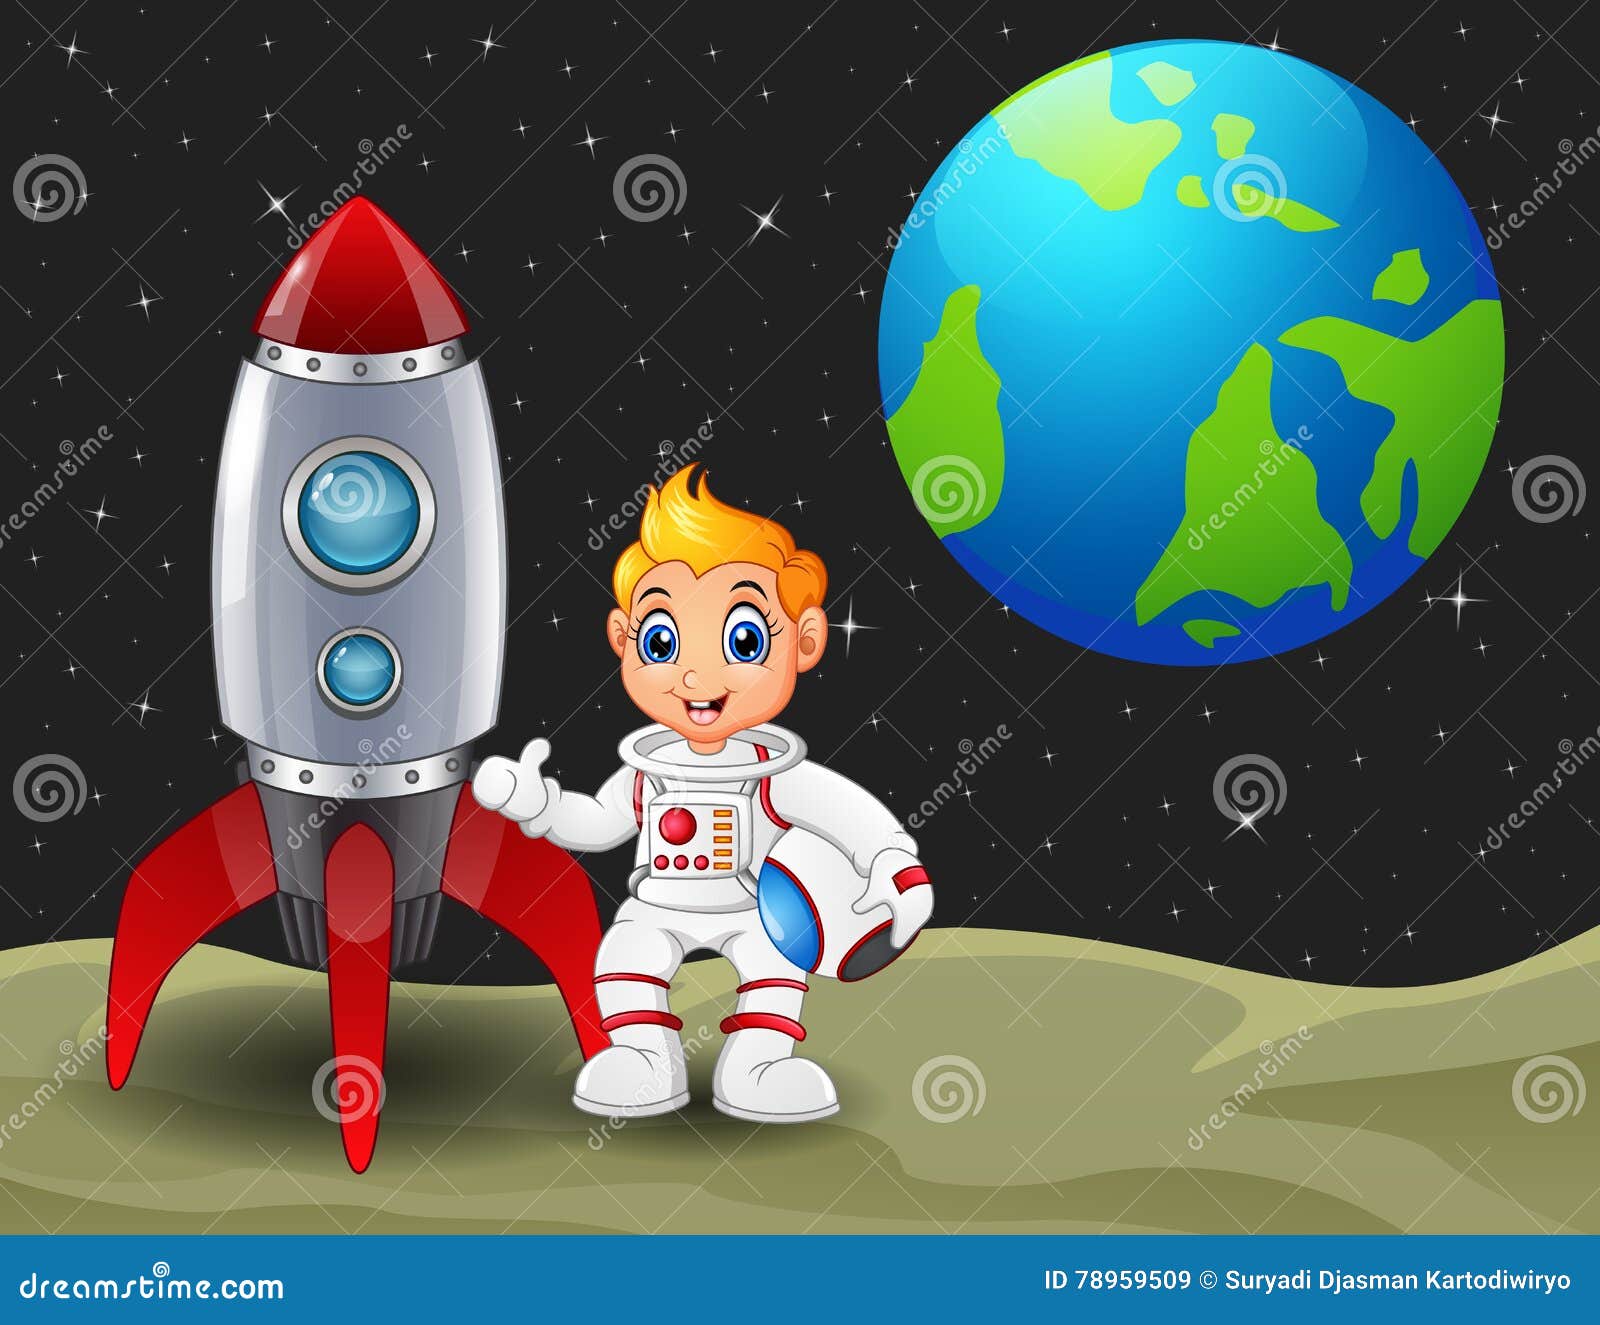 Featured image of post Astronauta Desenho Foguete Cortador astronauta e foguete kit com cortado e marcador selecione o tamanho dispon vel desejado ao lado direito da imagem